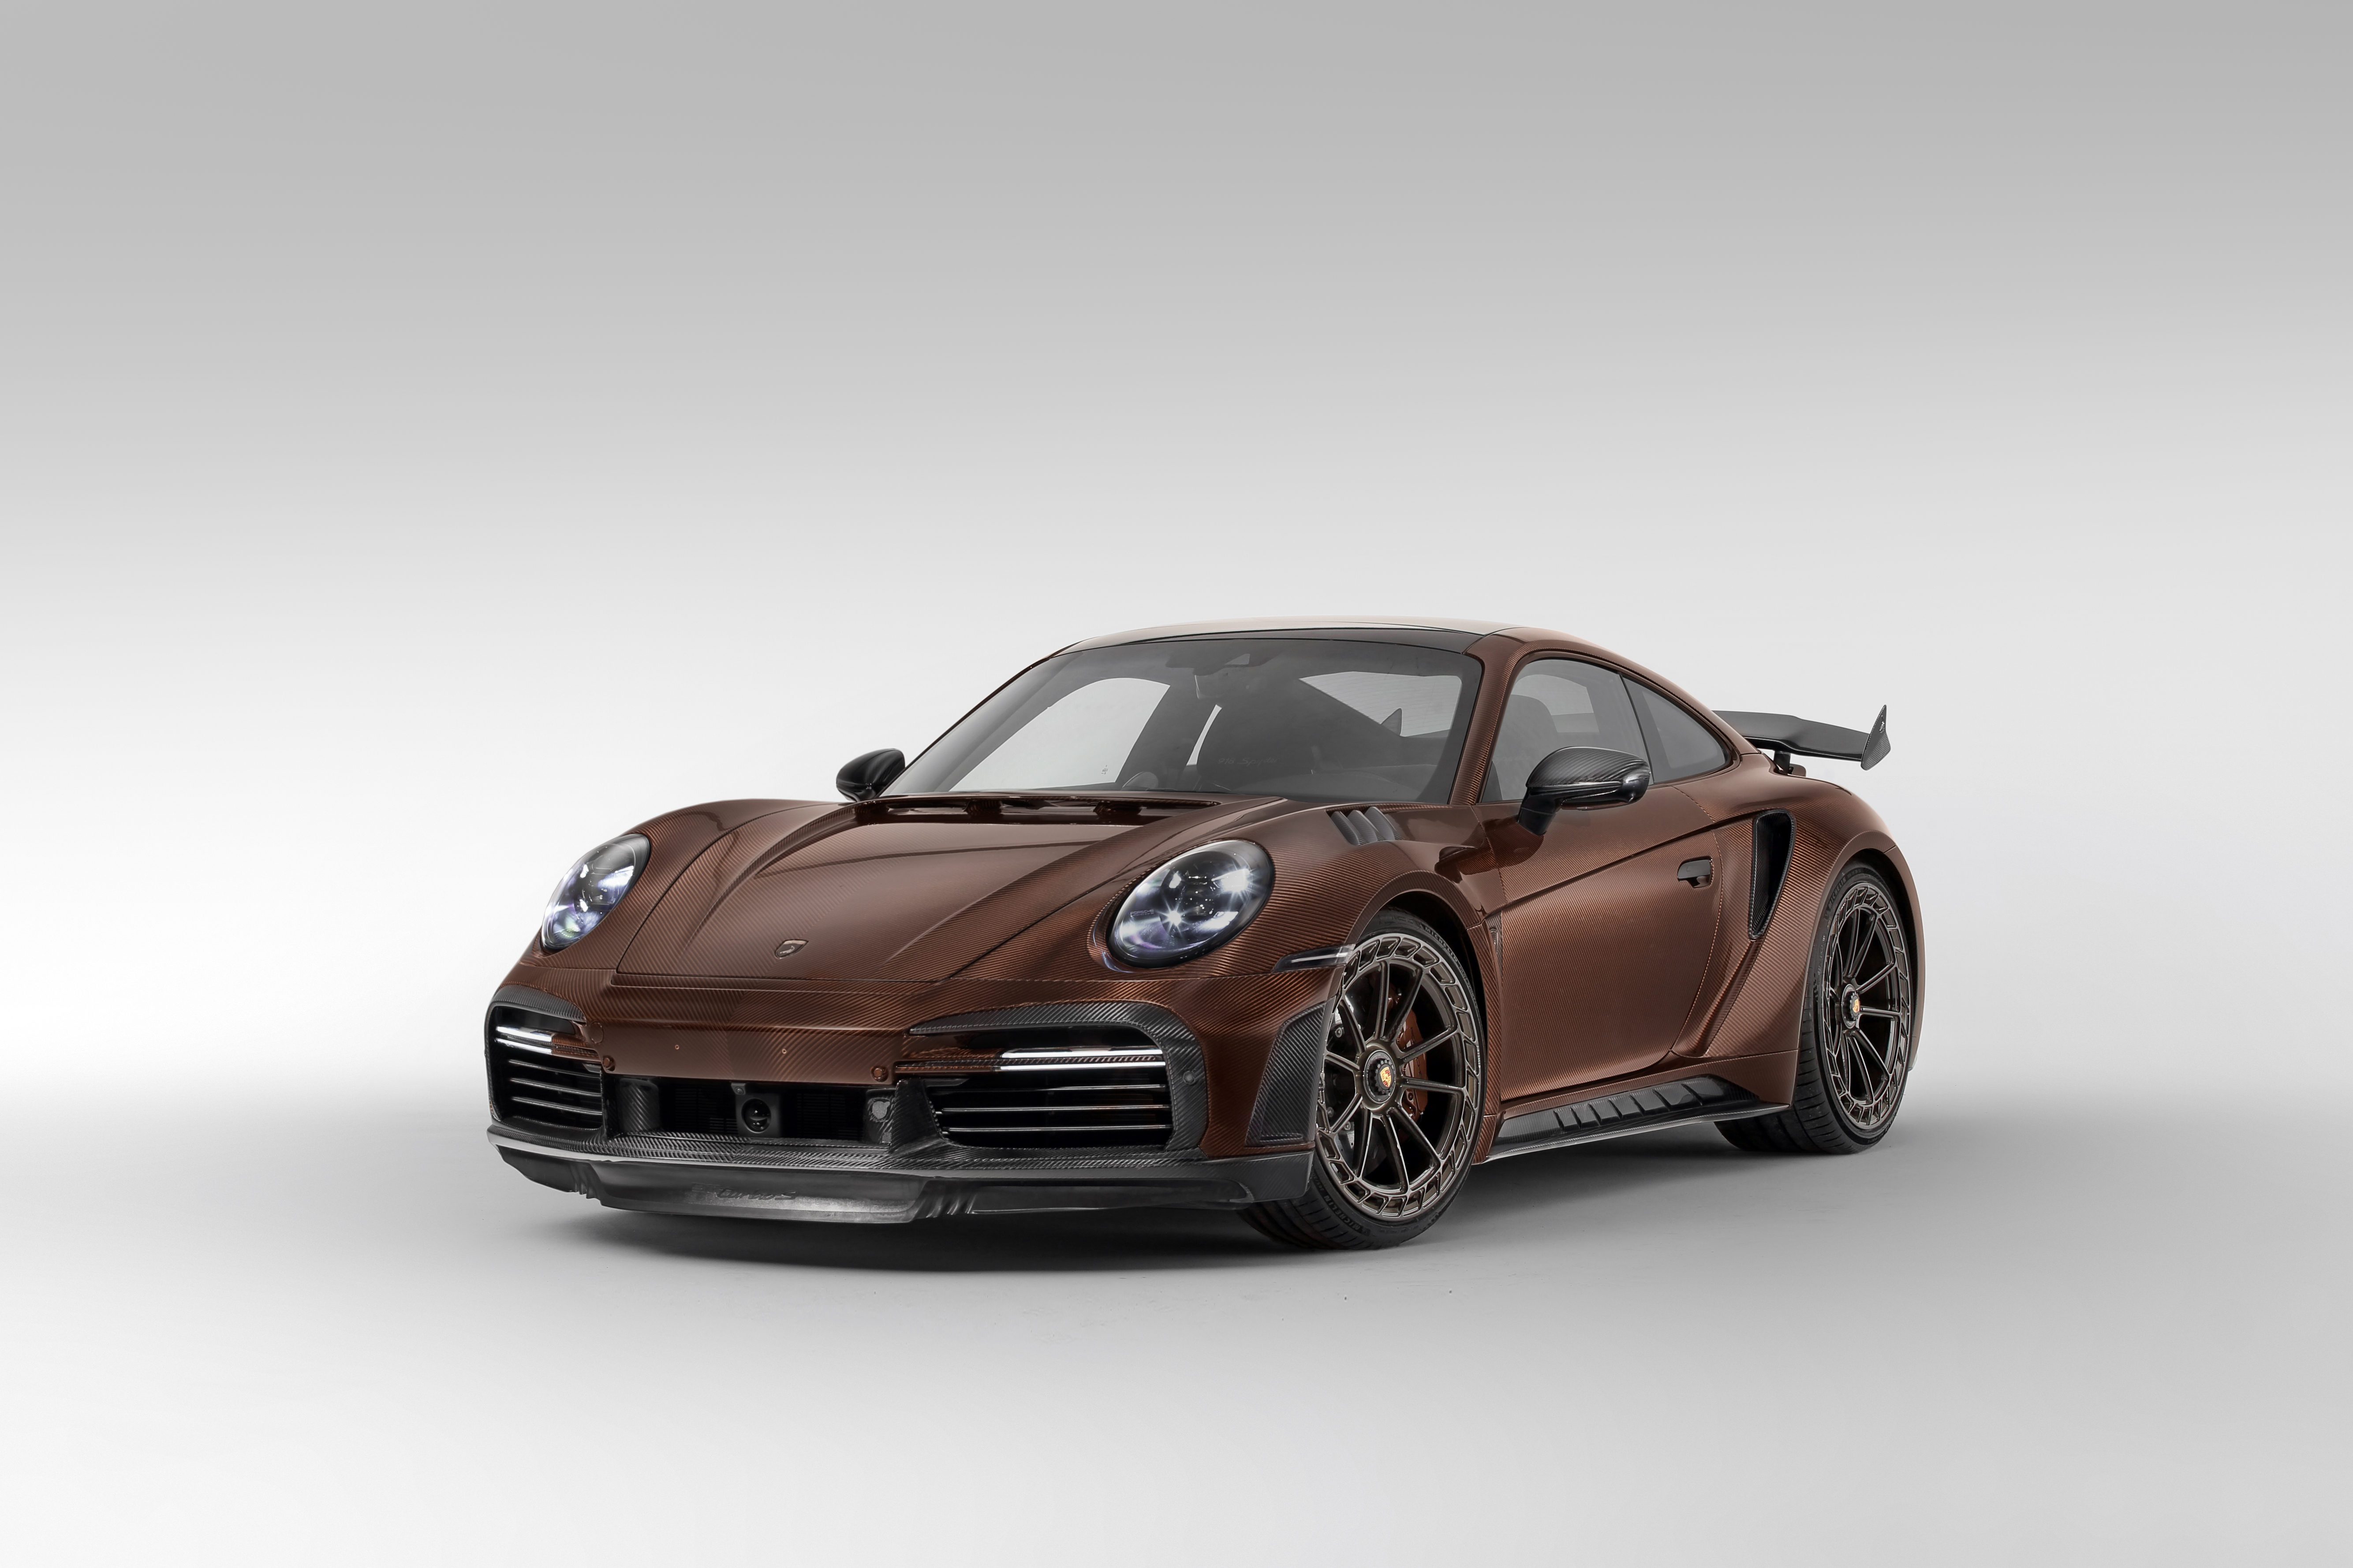 Free download wallpaper Porsche, Vehicles, Porsche 911 Turbo, Porsche 911 Turbo S Stinger Gtr Carbon Edition on your PC desktop